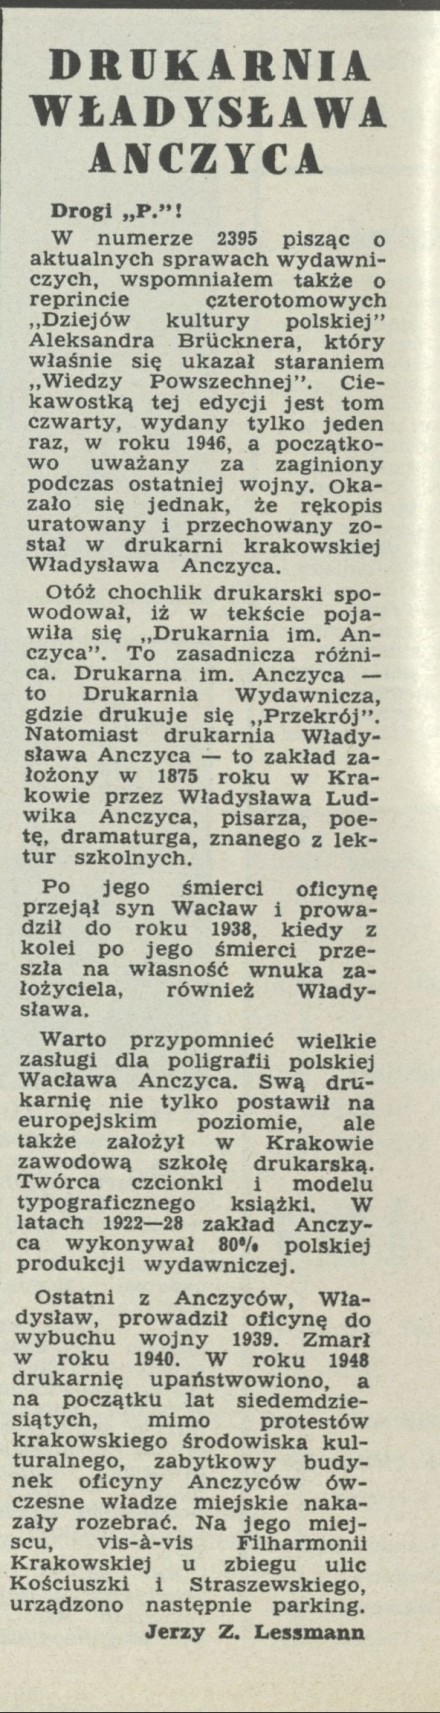 Drukarnia Władysława Anczyca